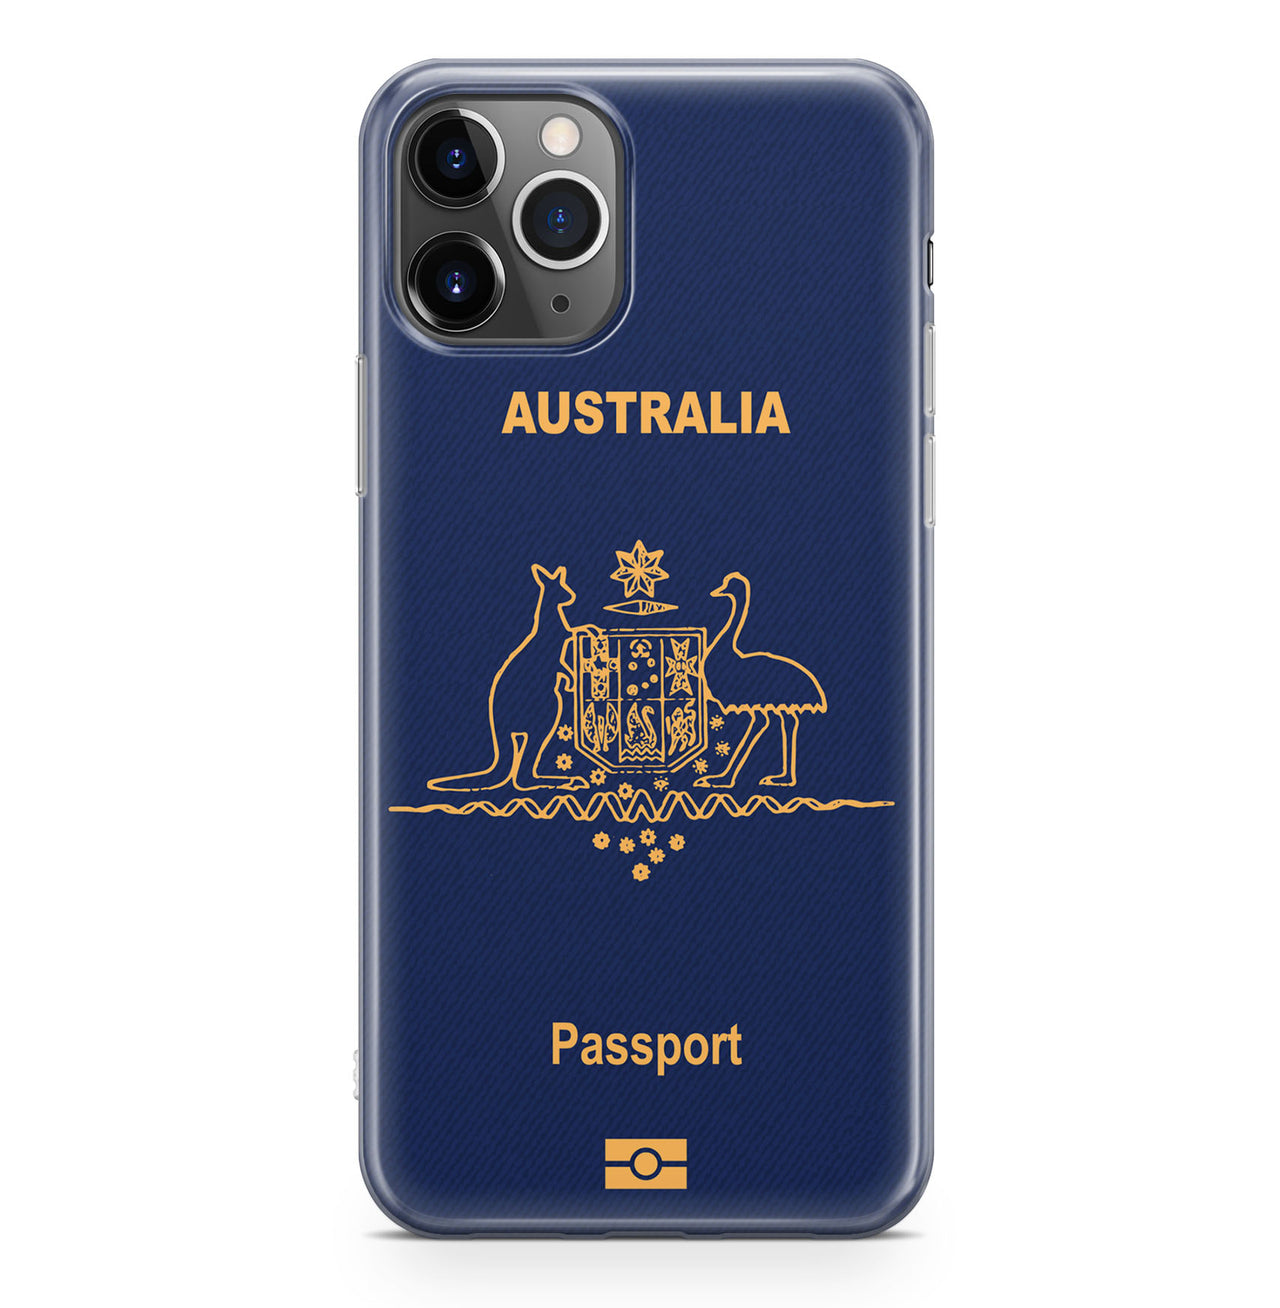 Australia Passport Designed iPhone Cases